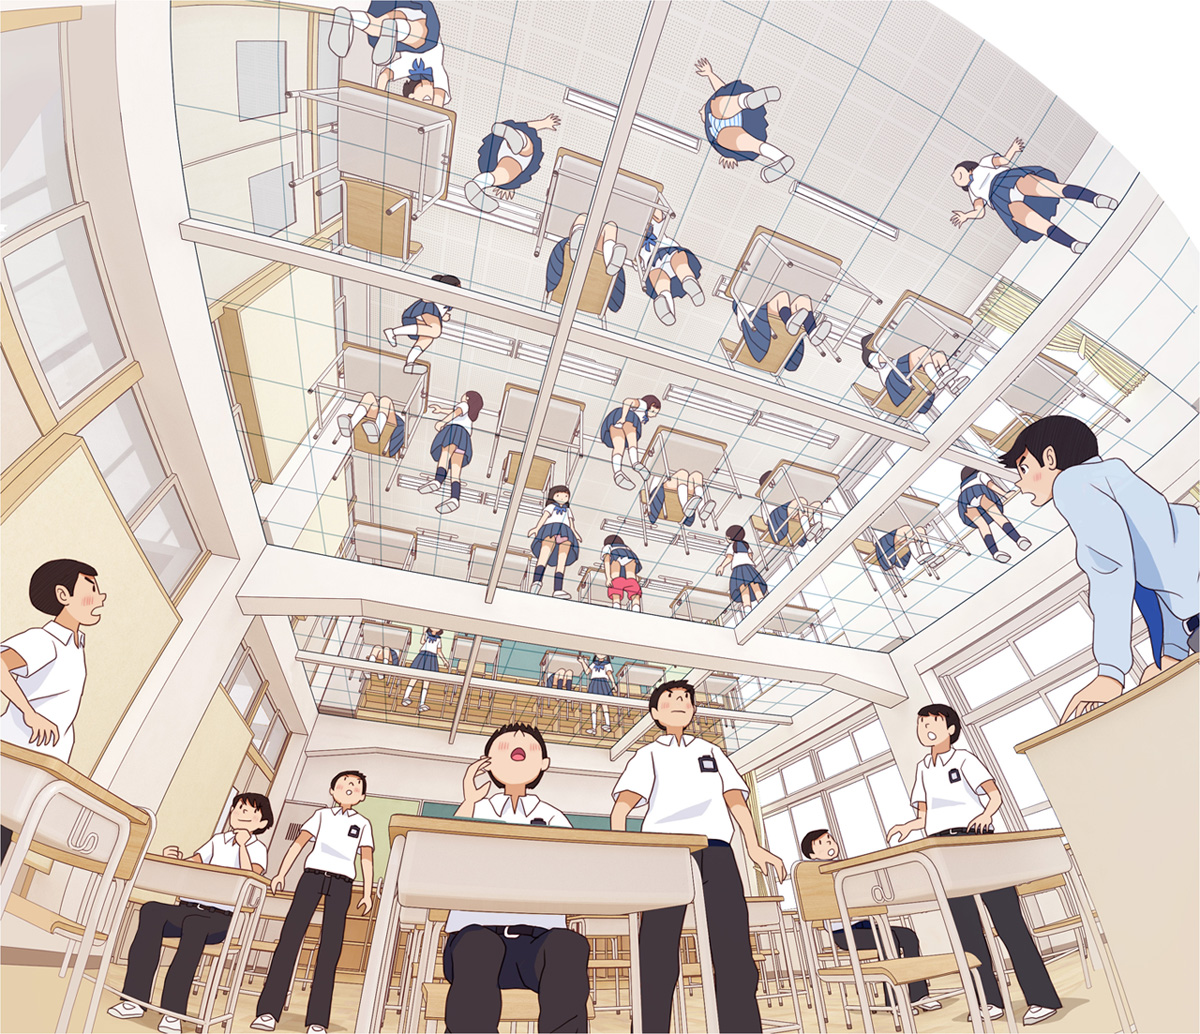 【妄想系列】如果教室的地板是玻璃的话